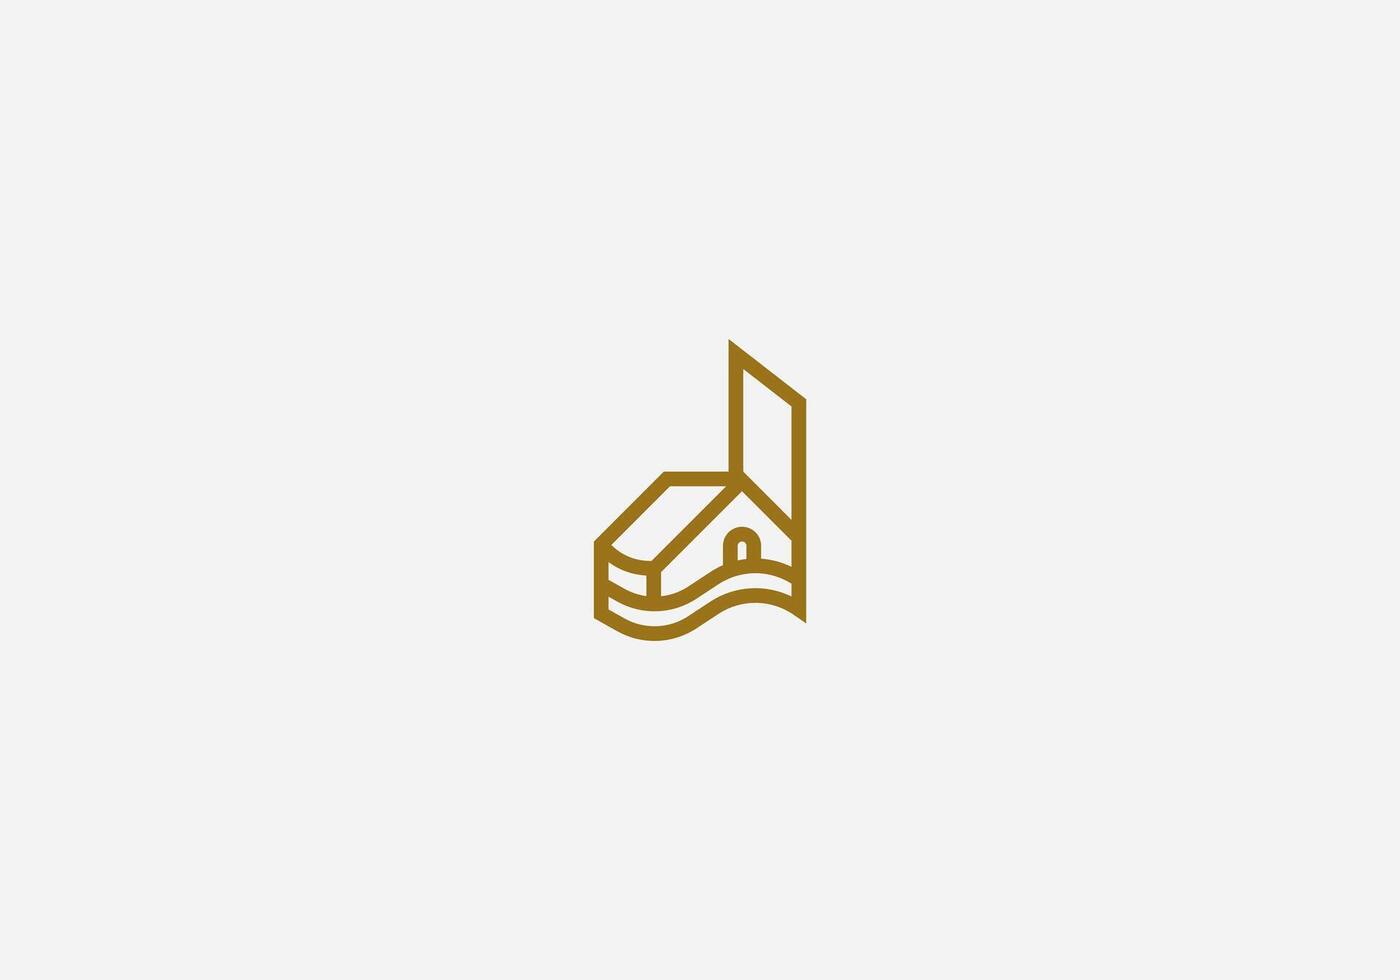 Logo Brief d Zuhause oder d Haus Logo, echt Nachlass Logo mit Brief D, einzigartig echt Anwesen, Eigentum, die Architektur, Konstruktion Geschäft Identität Vektor Symbol.